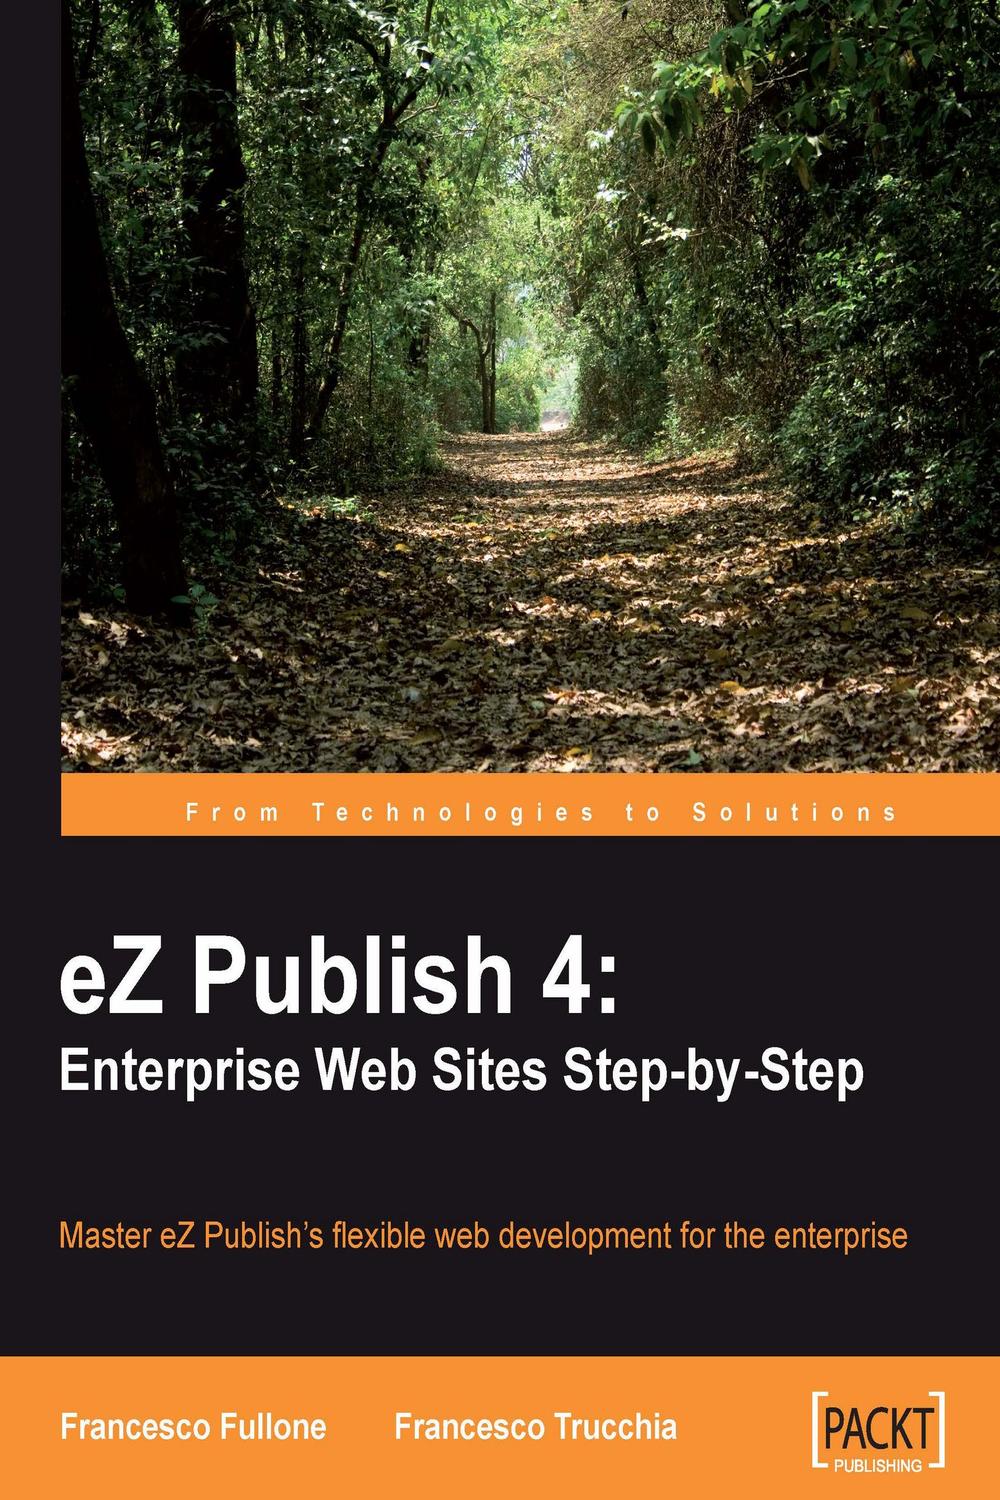 eZ Publish 4: Enterprise Web Sites Step-by-Step - Francesco Fullone, Francesco Trucchia